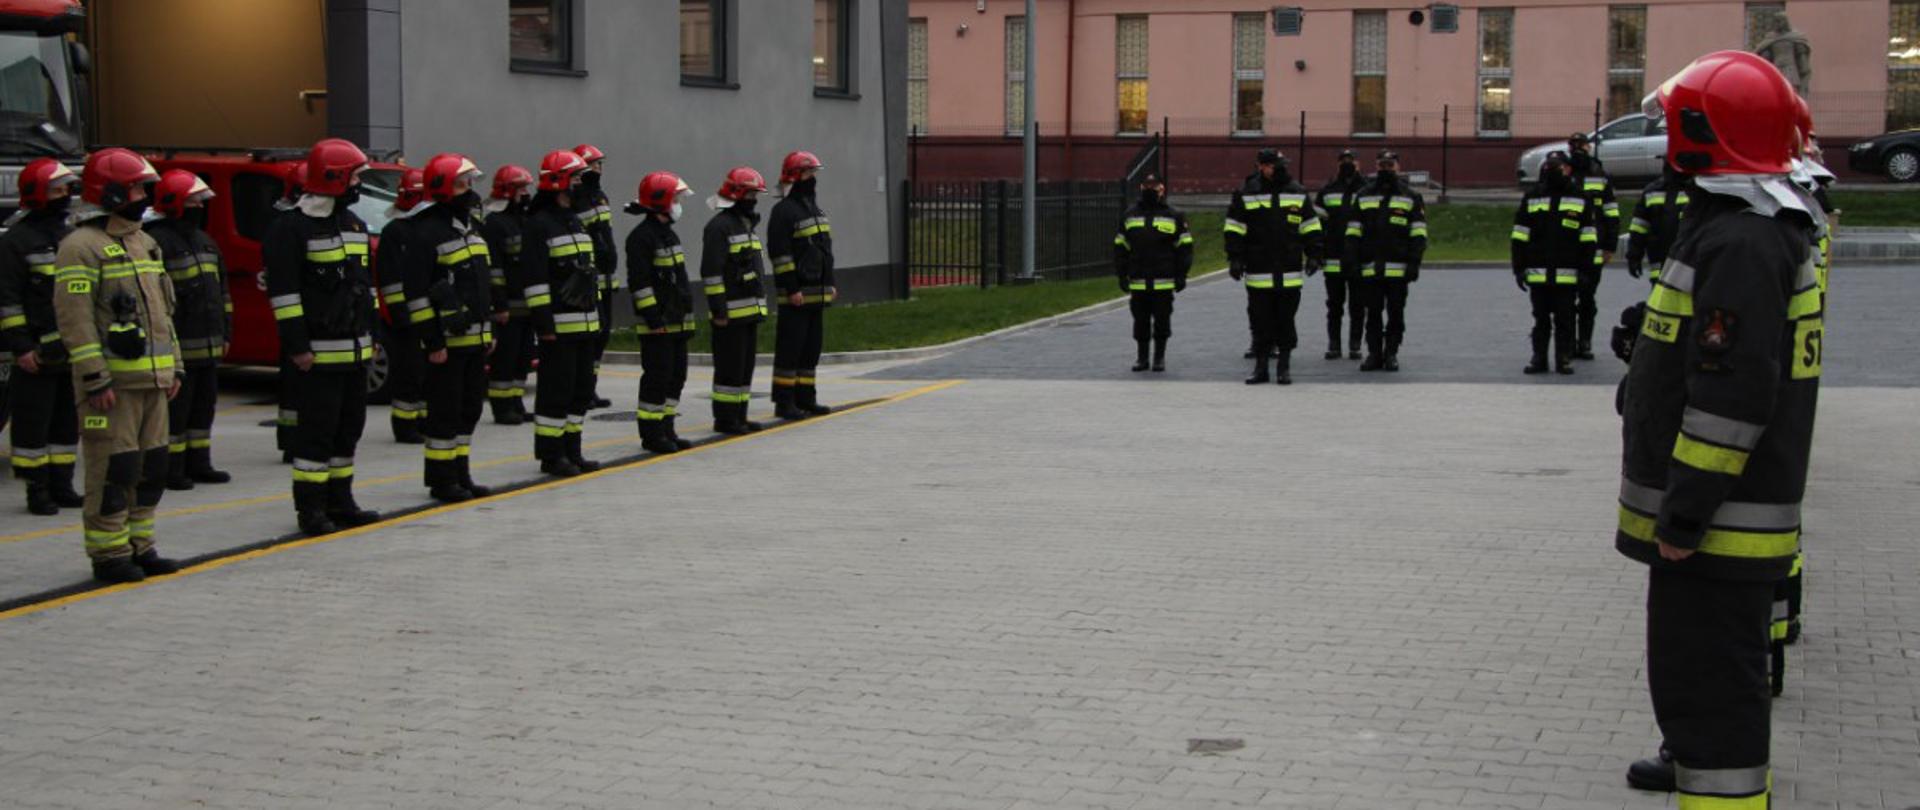 Strażacy z Jednostki Ratowniczo-Gaśniczej nr 1 w Kielcach już w nowej siedzibie